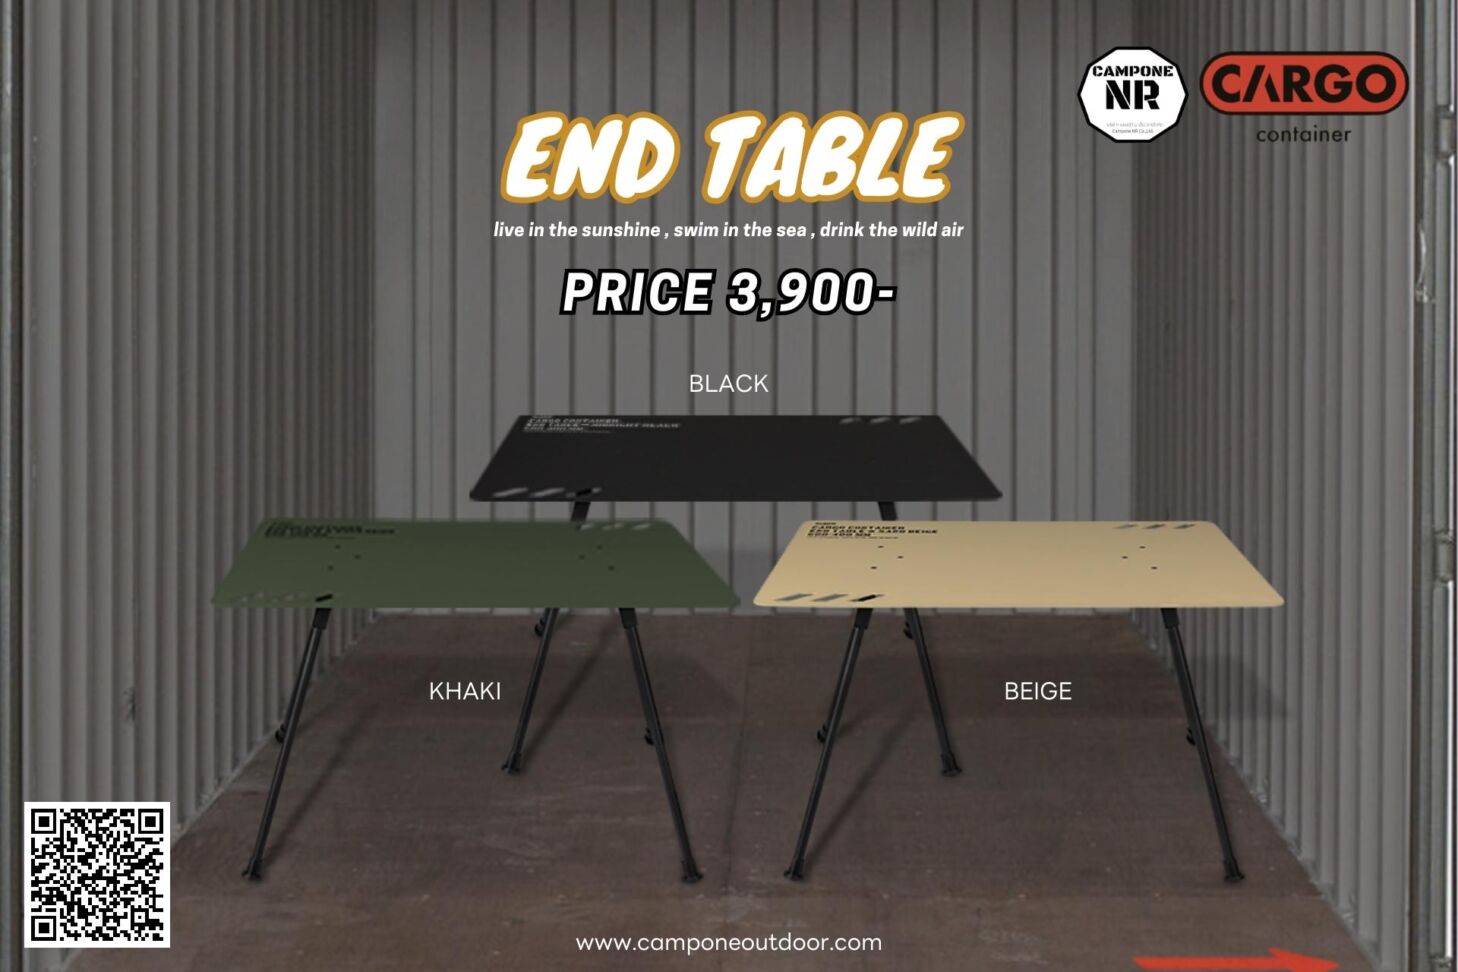 รีวิว โต๊ะ End Table จาก Cargo container